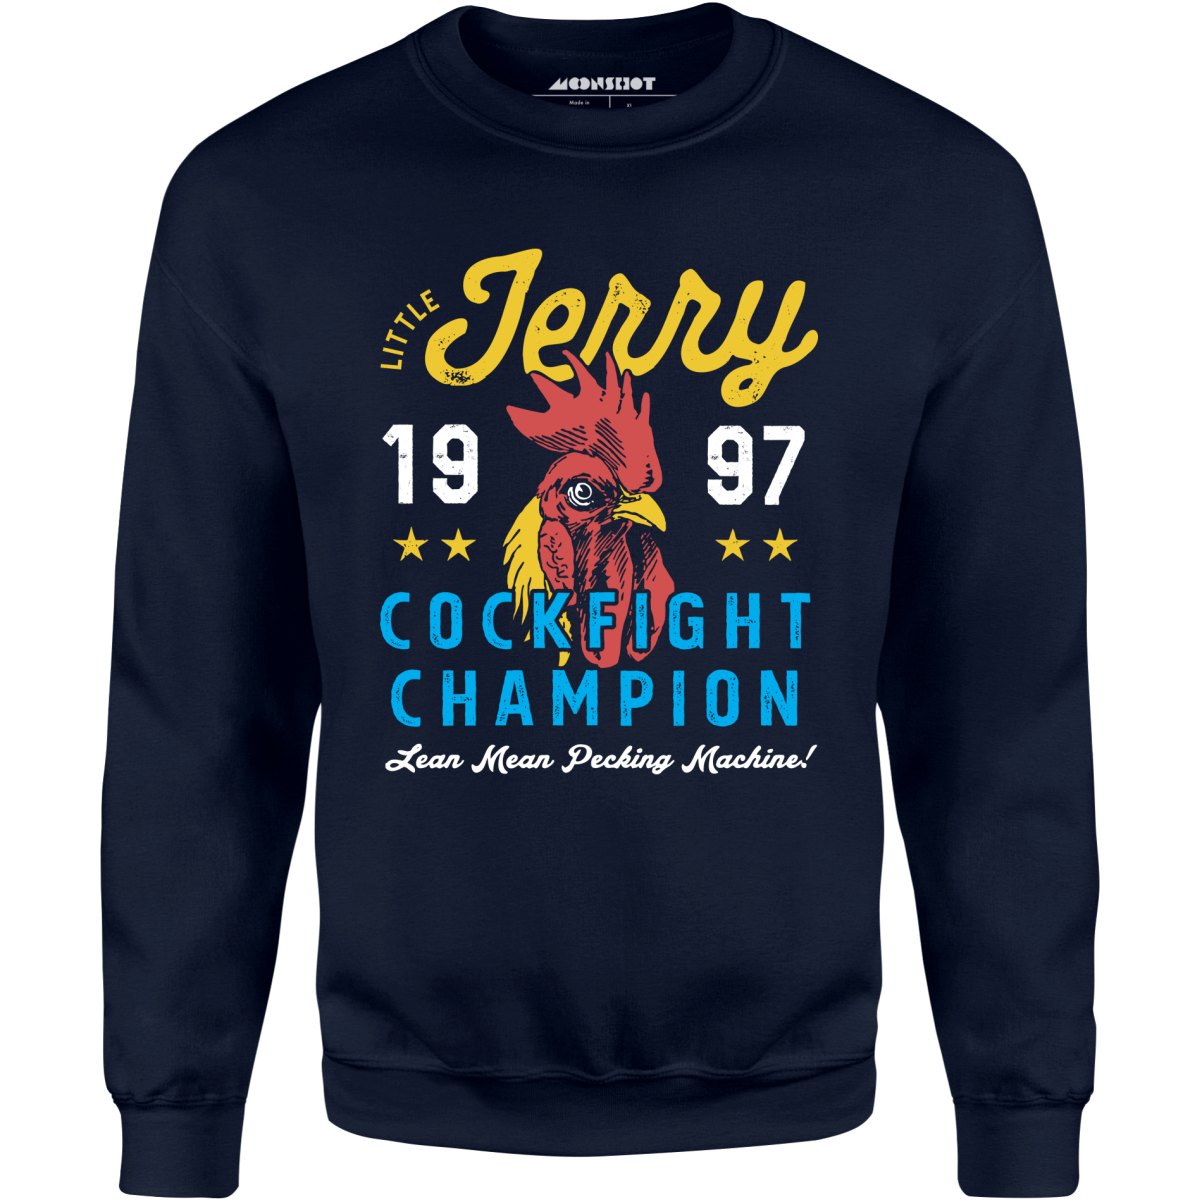 Little Jerry Cockfight Champion - Unisex Sweatshirt